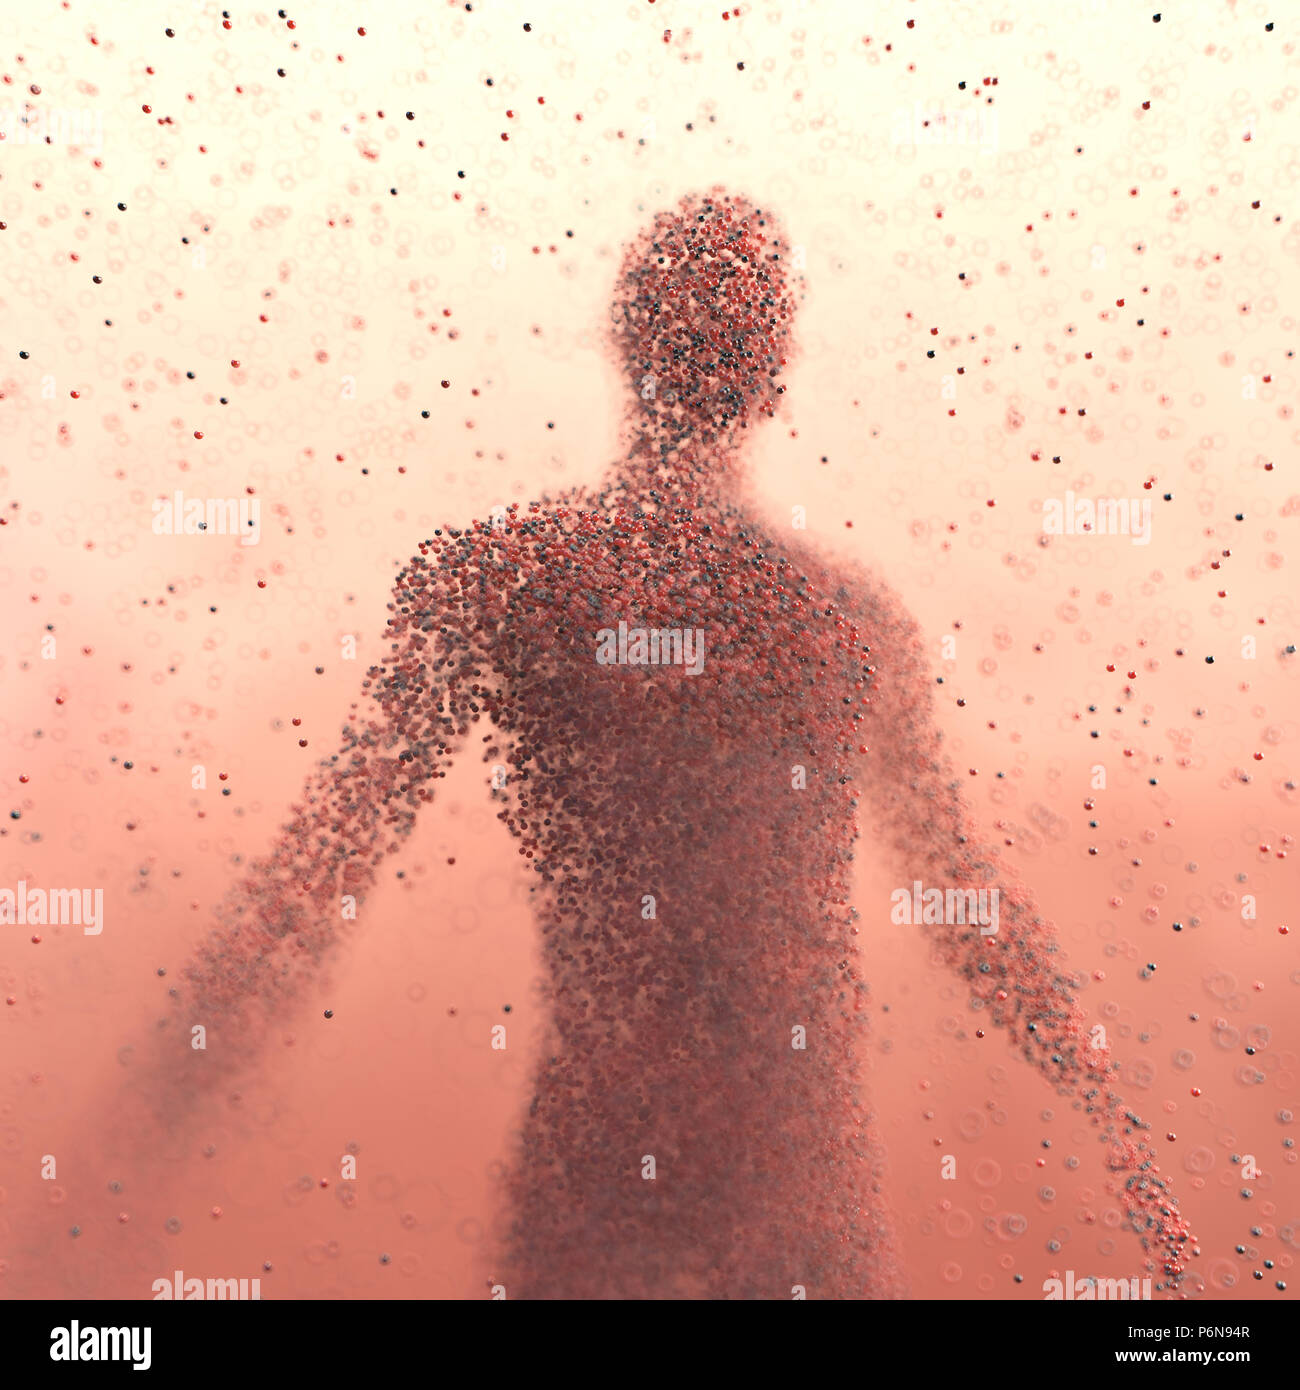 Ilustración 3D. Forma del cuerpo humano con las moléculas de color en una imagen concepto de ciencia. Foto de stock